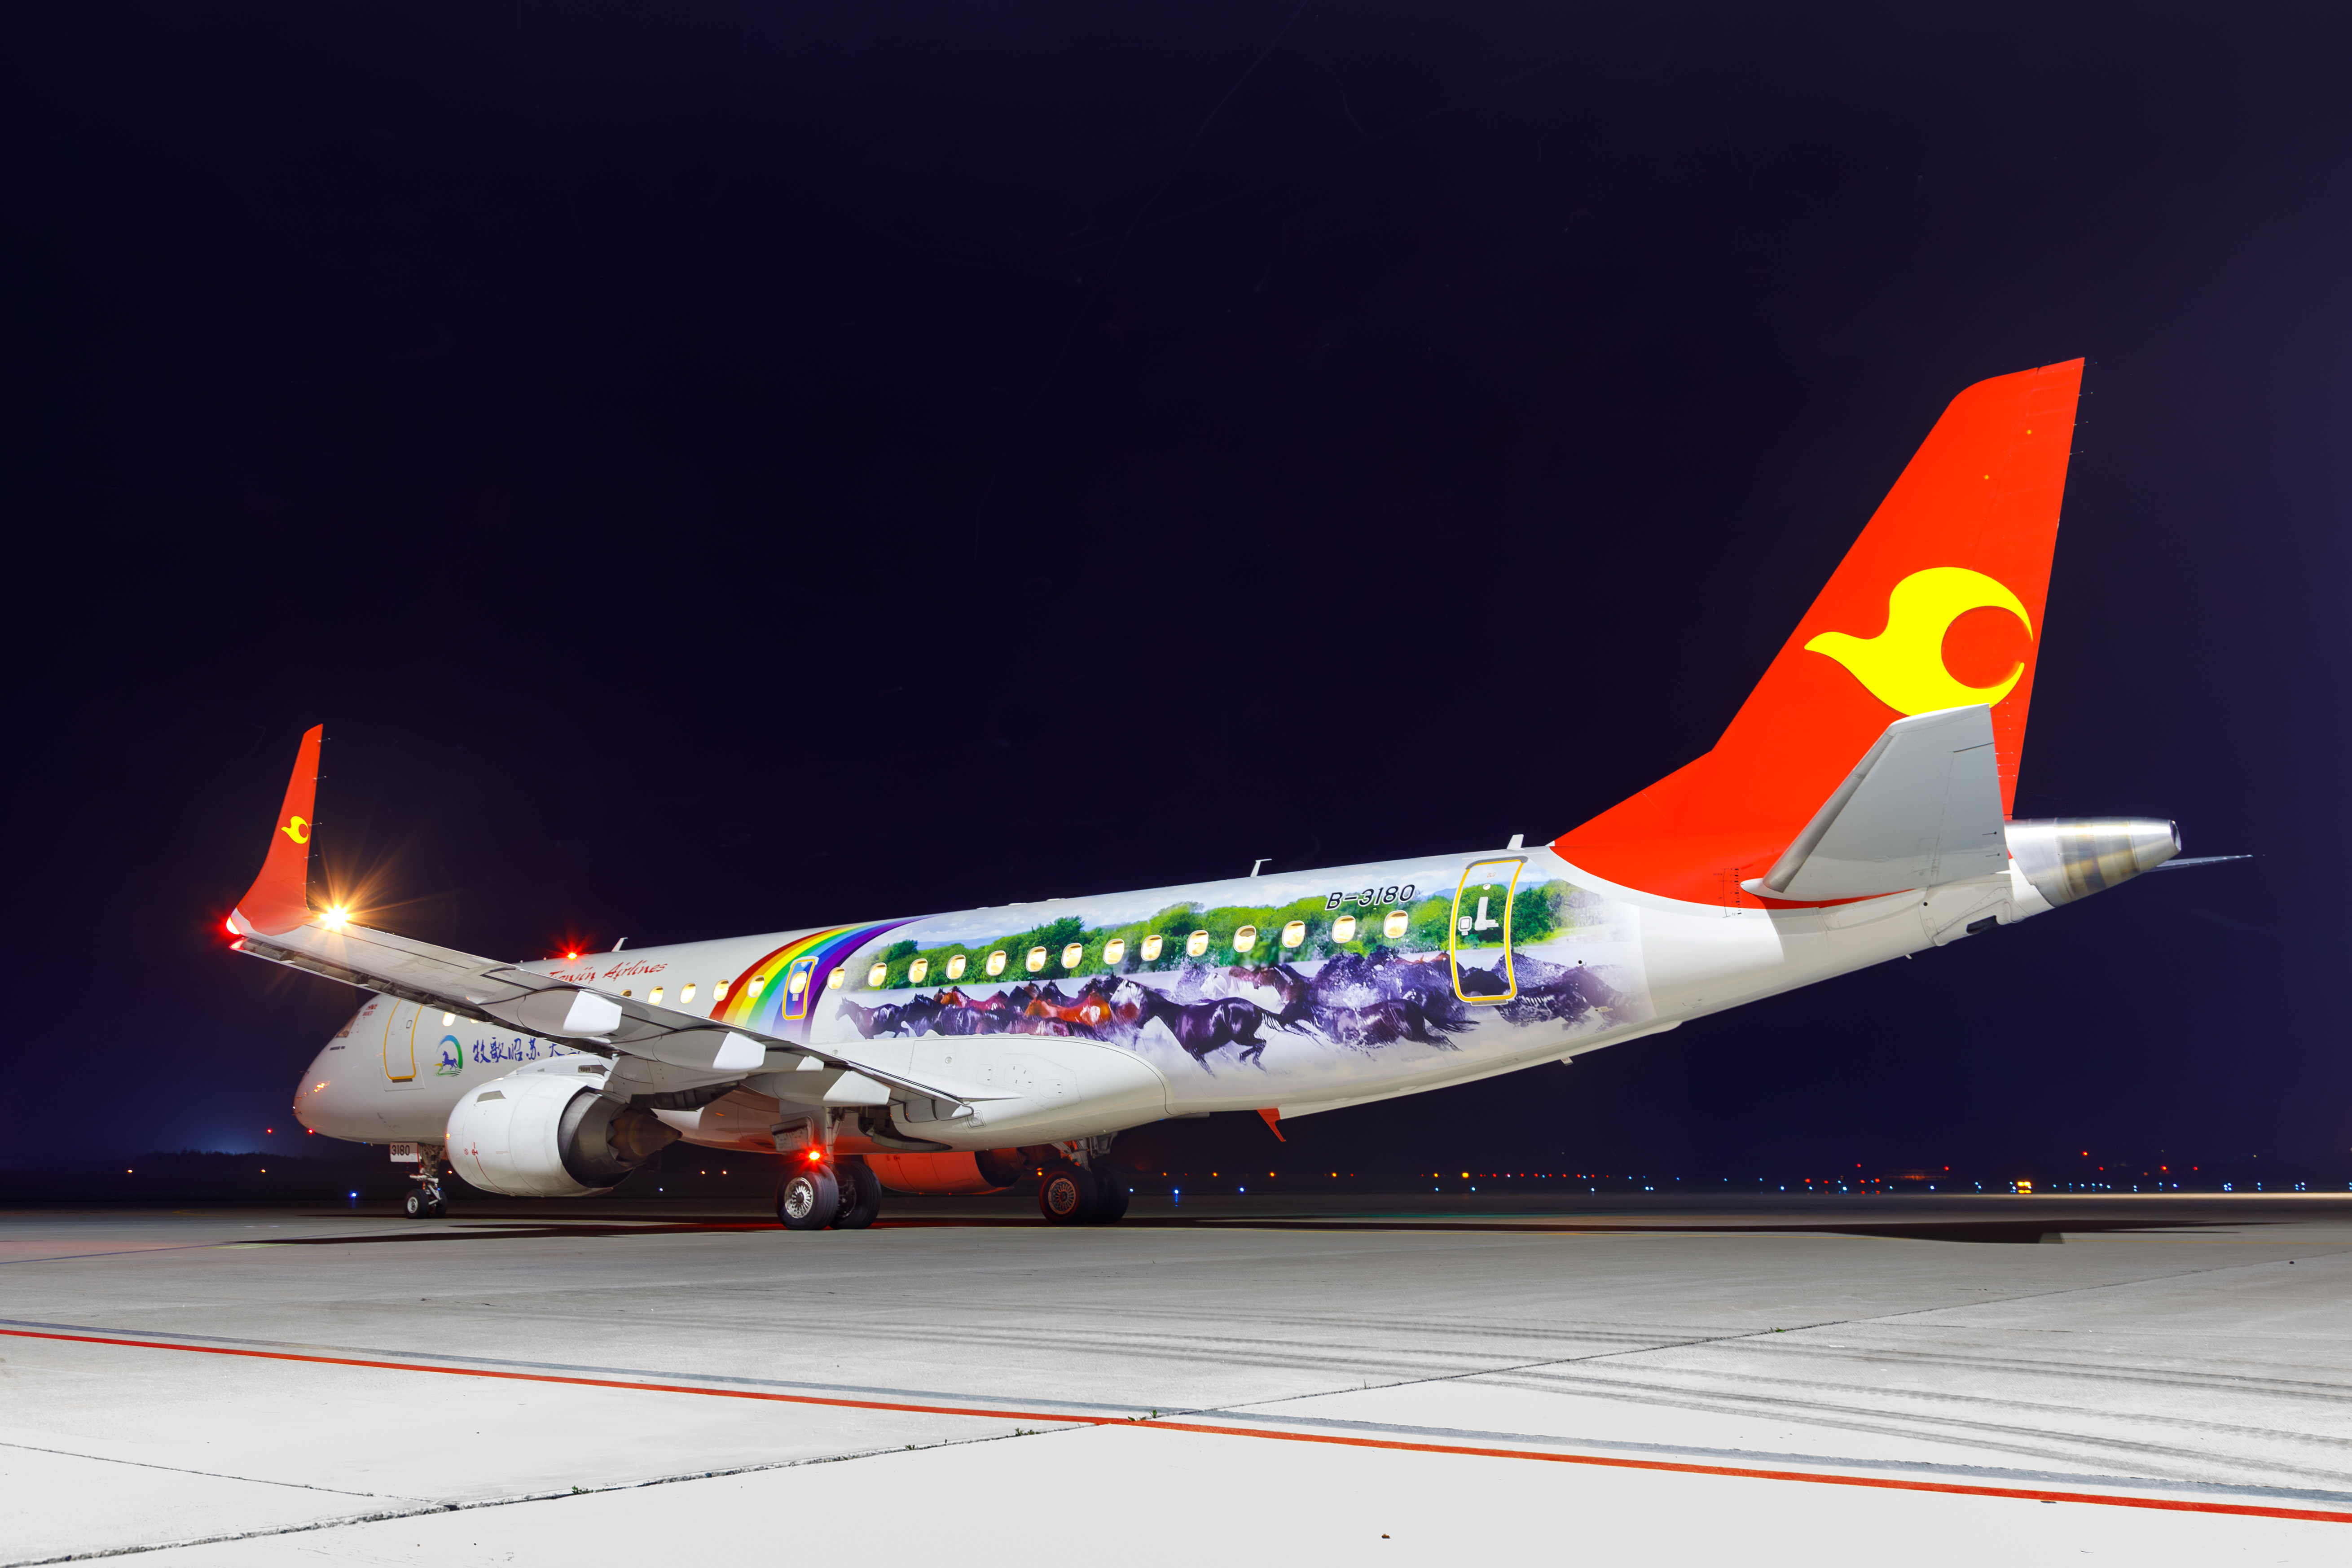  Открылись новые прямые рейсы в китайский город Хайлар авиакомпании Tinjin Airlines 